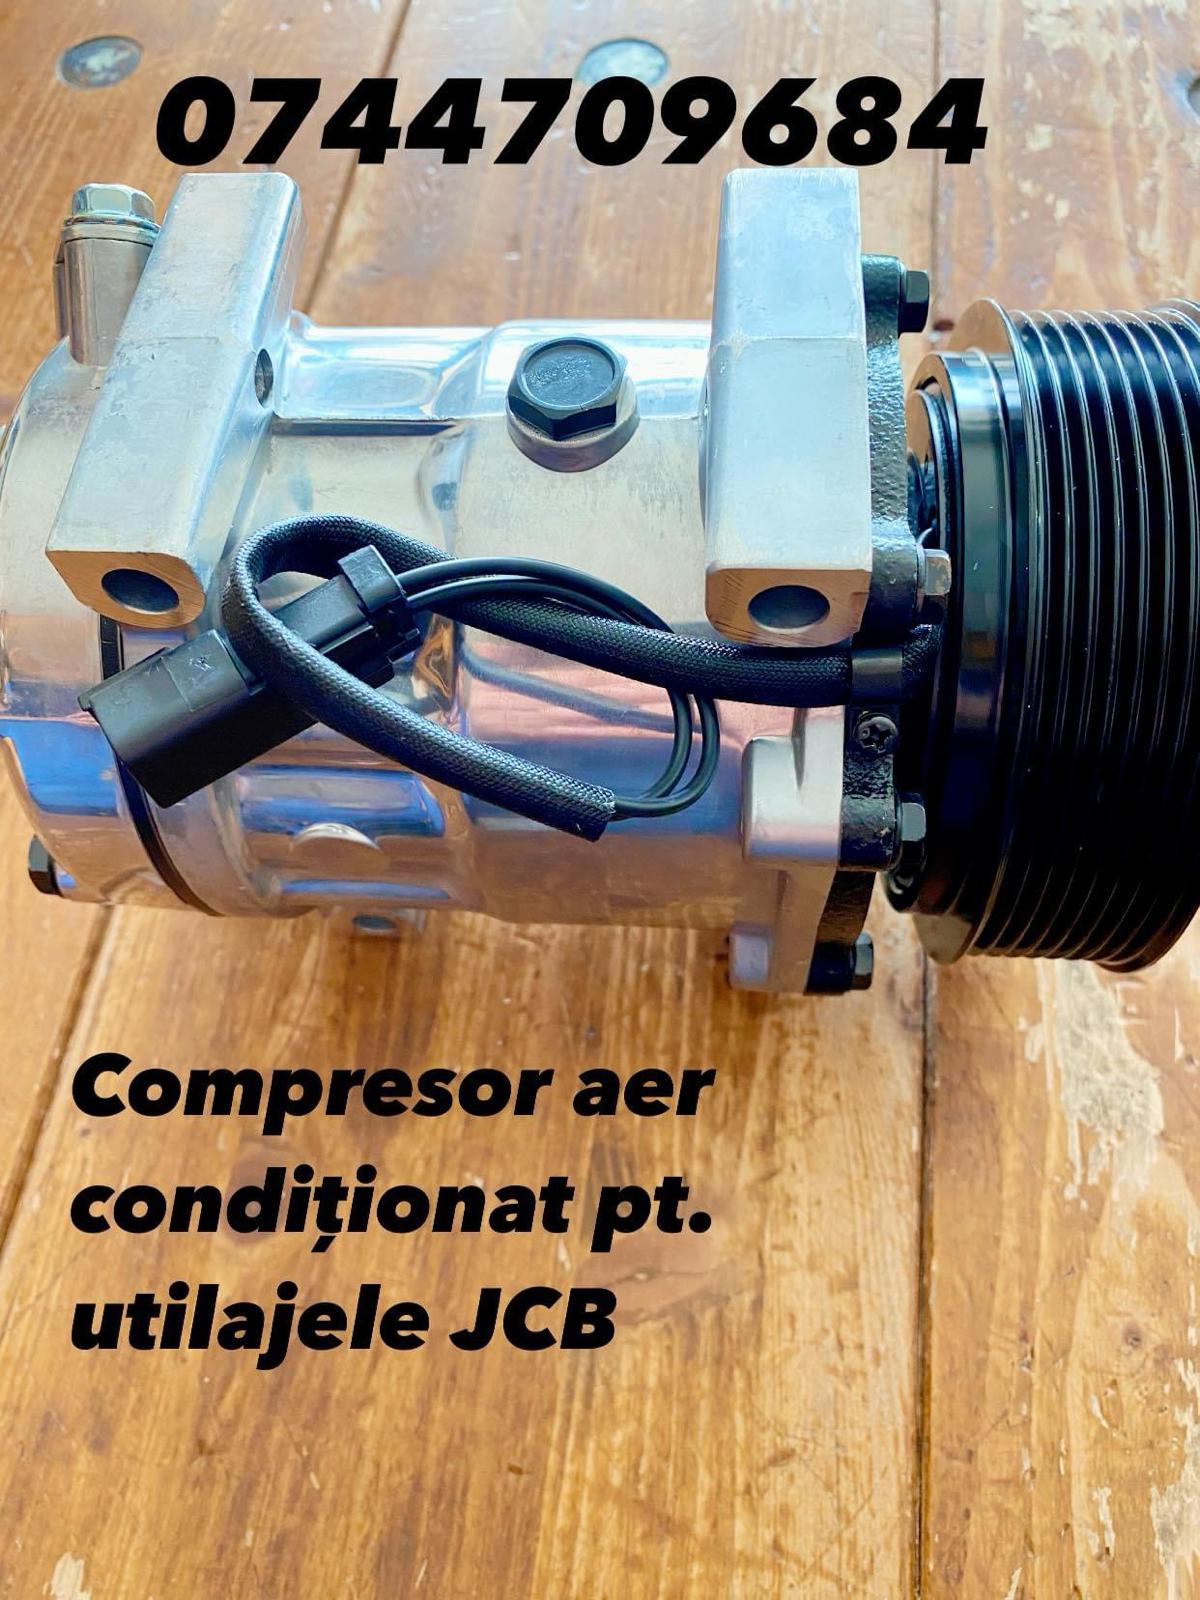 Compresor aer, lada de scule, fuzete pentru JCB